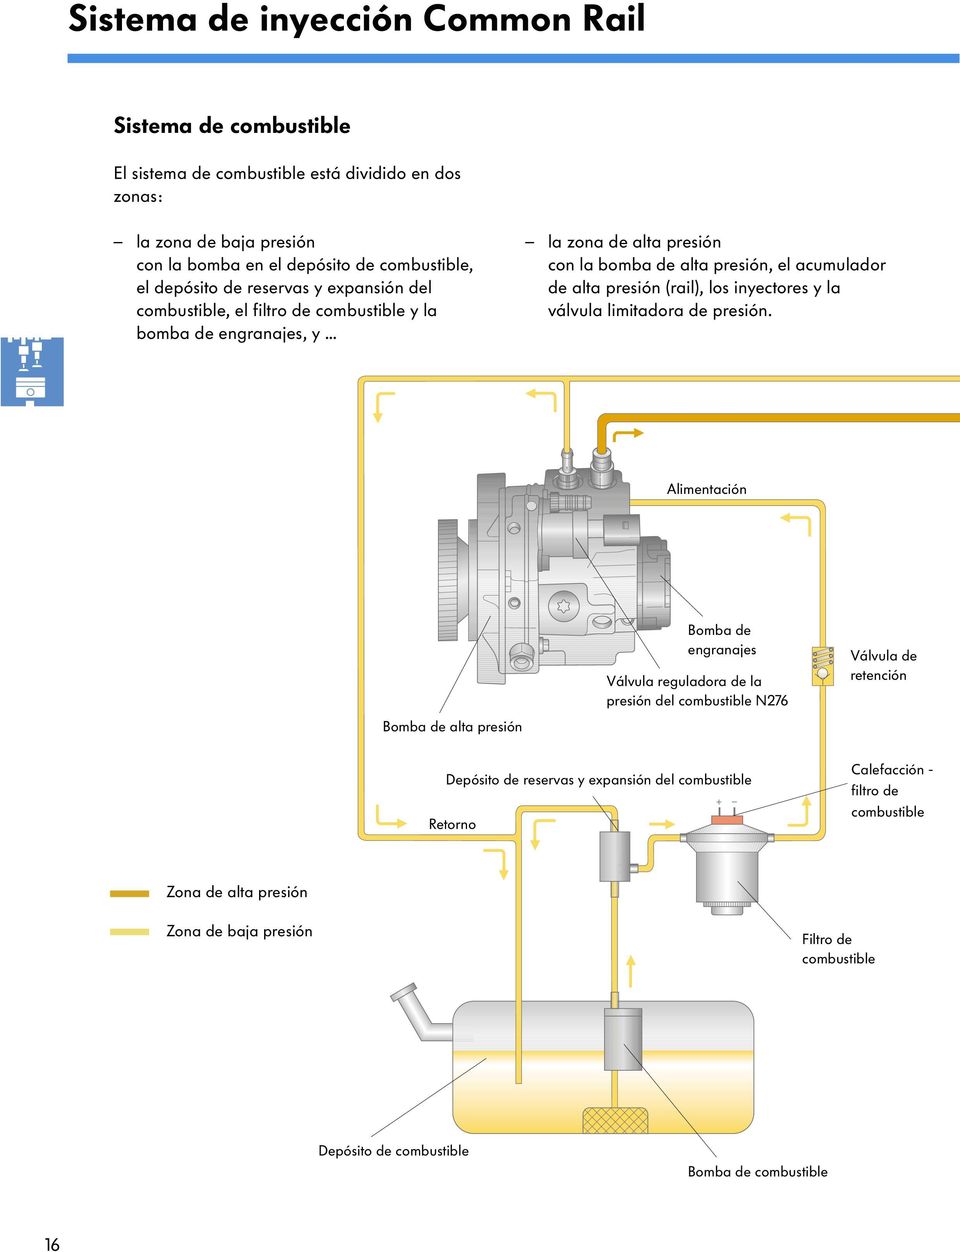 .. la zona de alta presión con la bomba de alta presión, el acumulador de alta presión (rail), los inyectores y la válvula limitadora de presión.